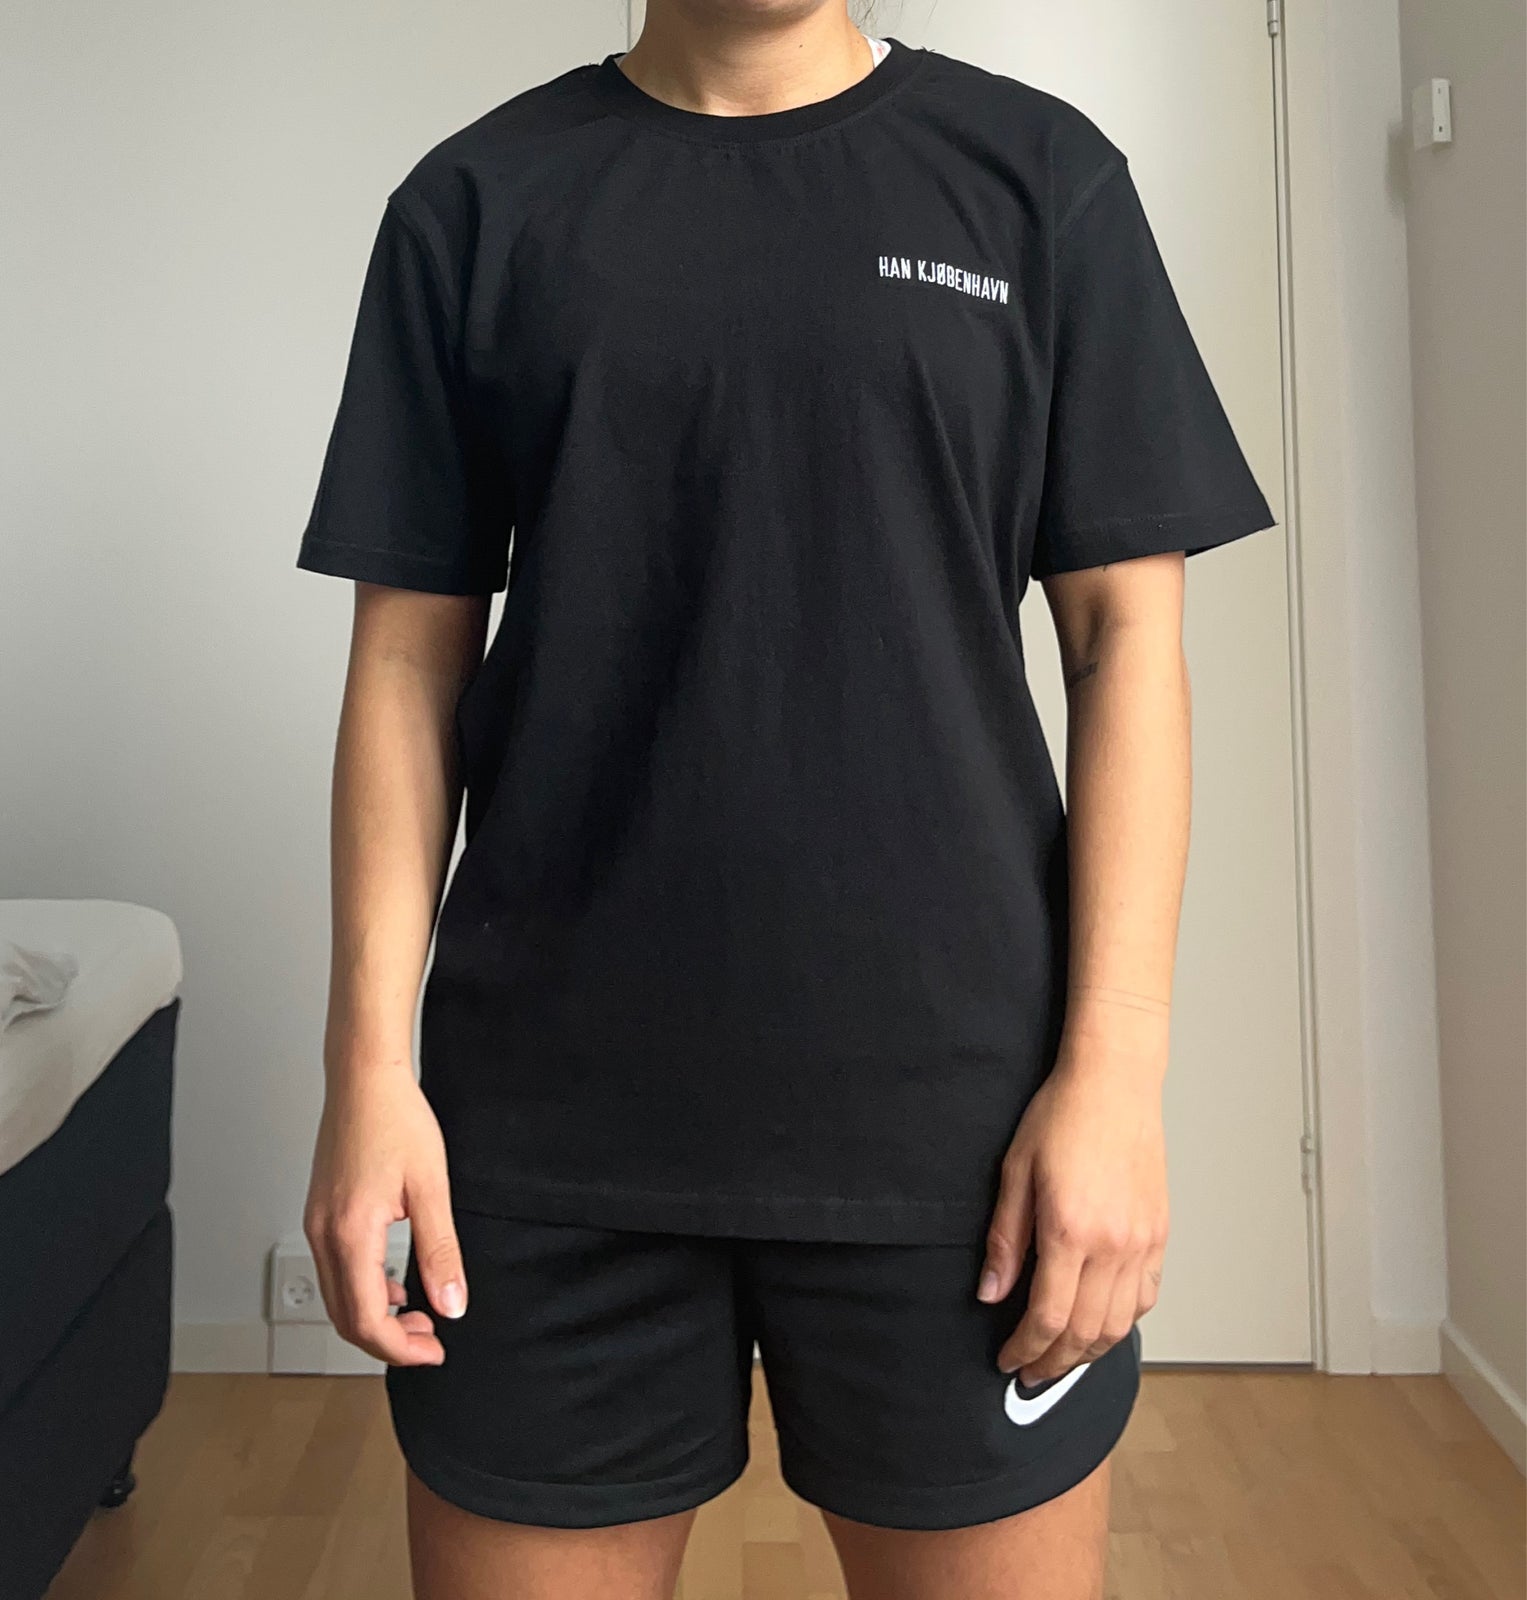 Held og lykke spontan analogi T-shirt, Han Kjøbenhavn, str. M – dba.dk – Køb og Salg af Nyt og Brugt